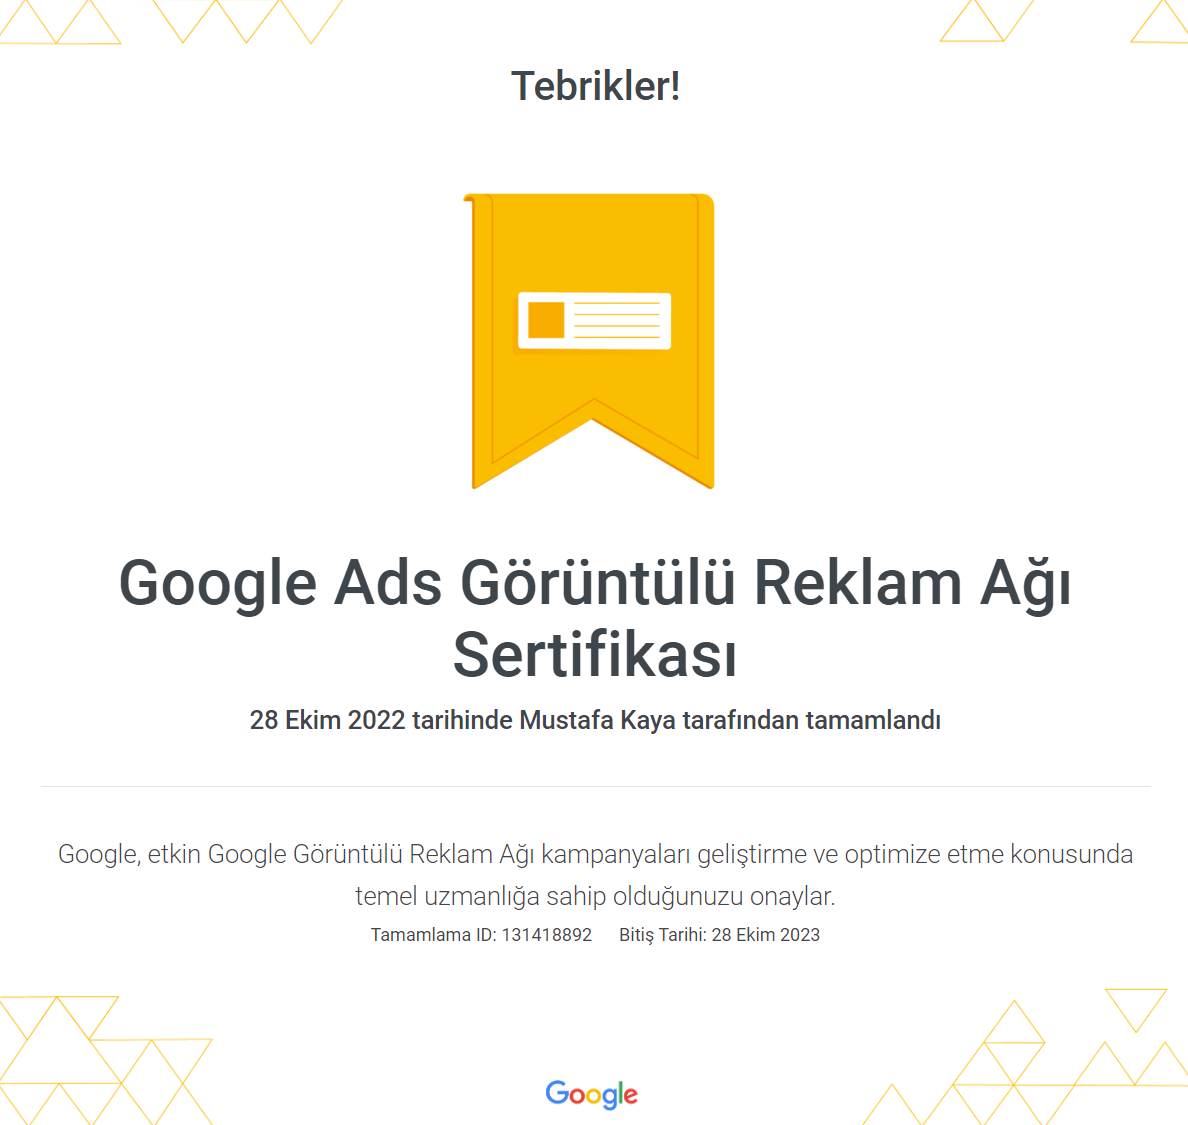 Google Ads Görüntülü Reklam Ağı Sertifikası